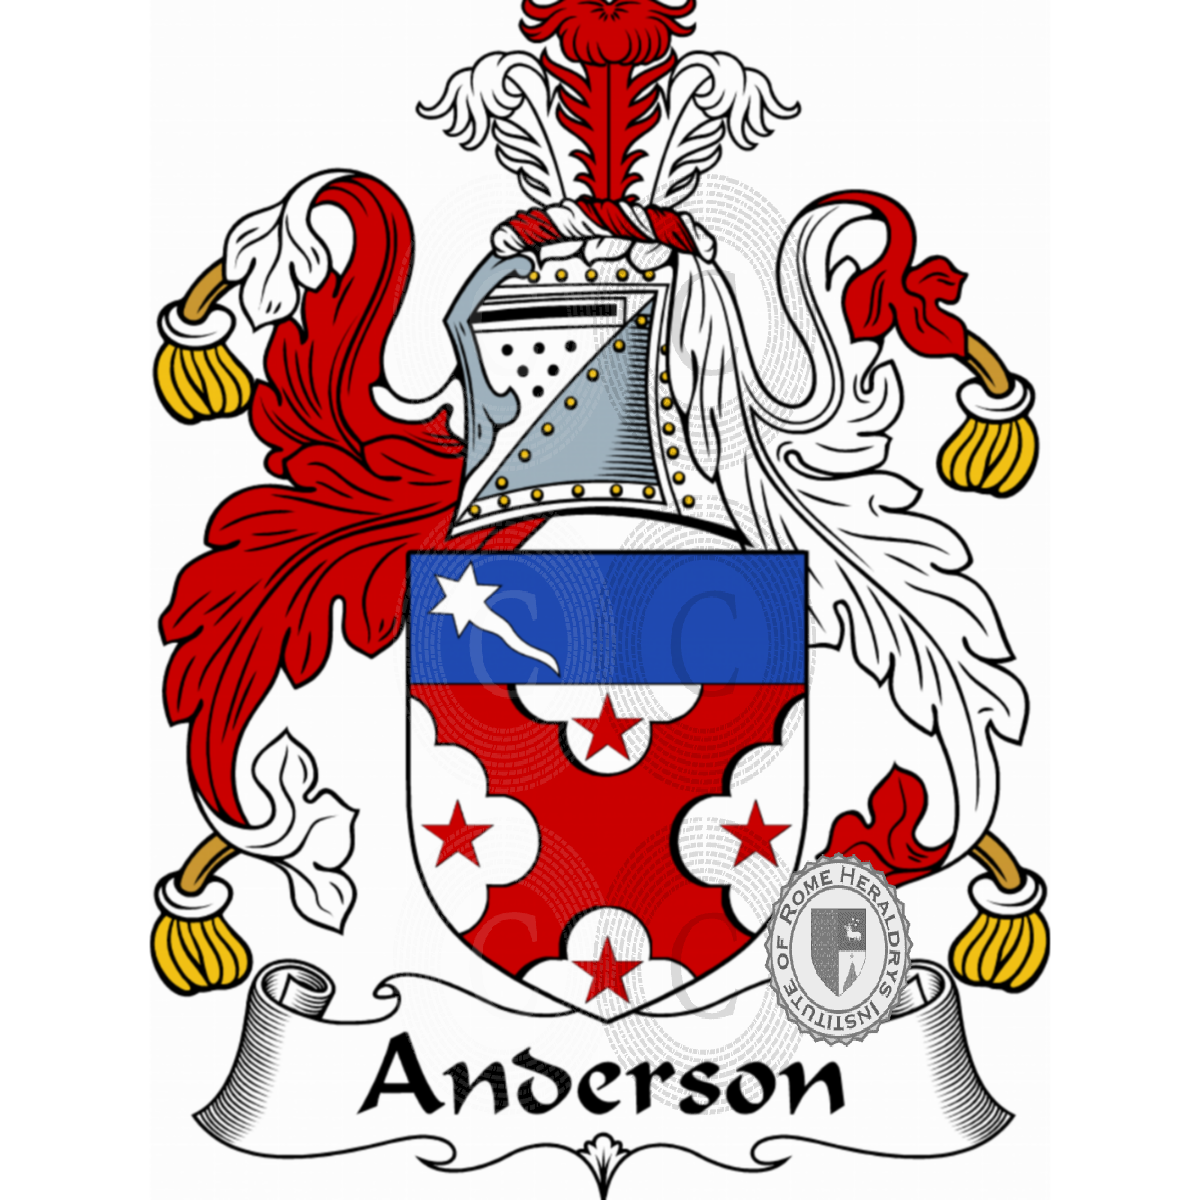 Wappen der FamilieAnderson